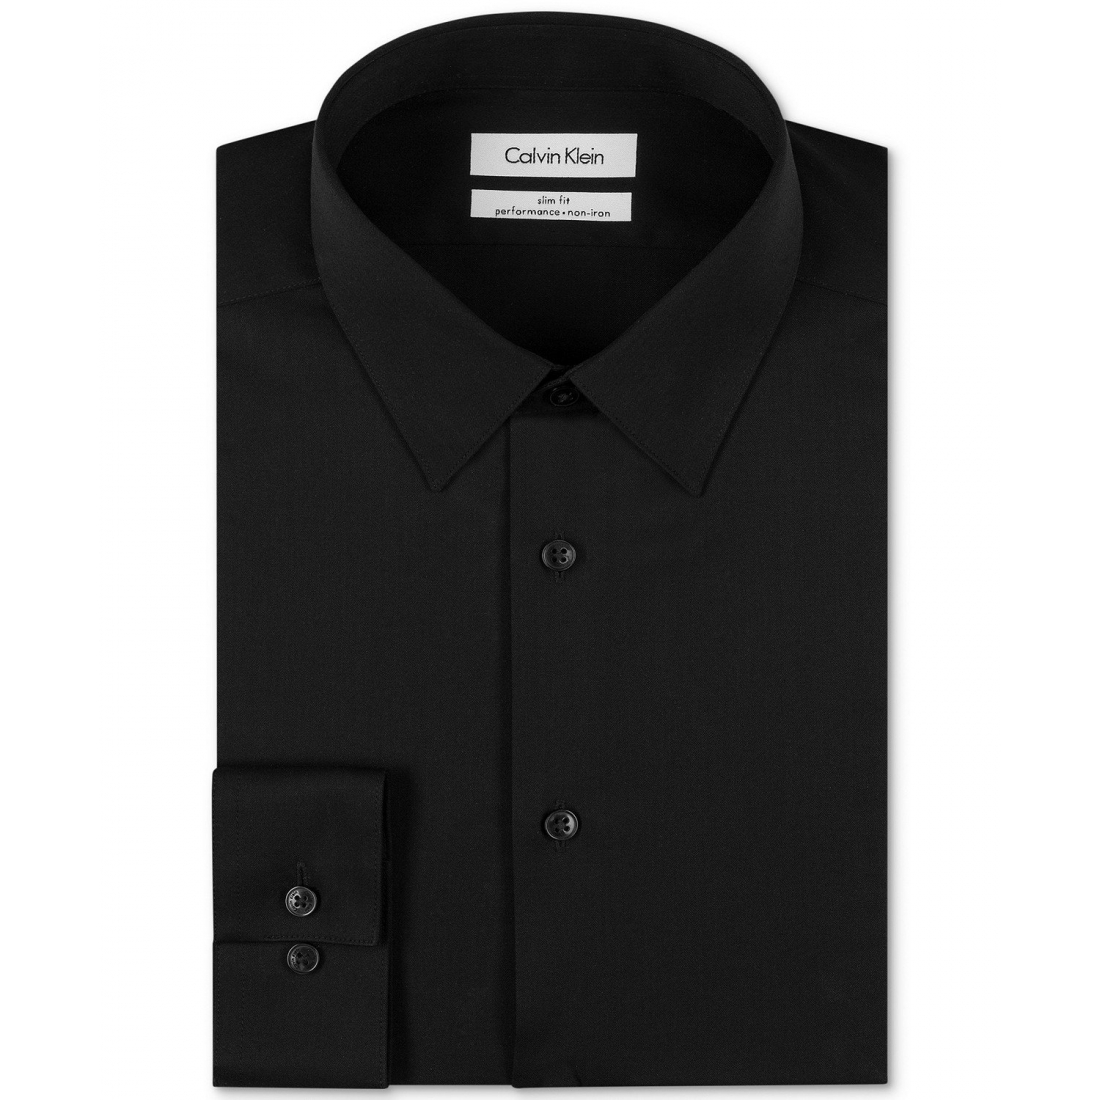 'Performance Herringbone Point Collar' Hemd für Herren